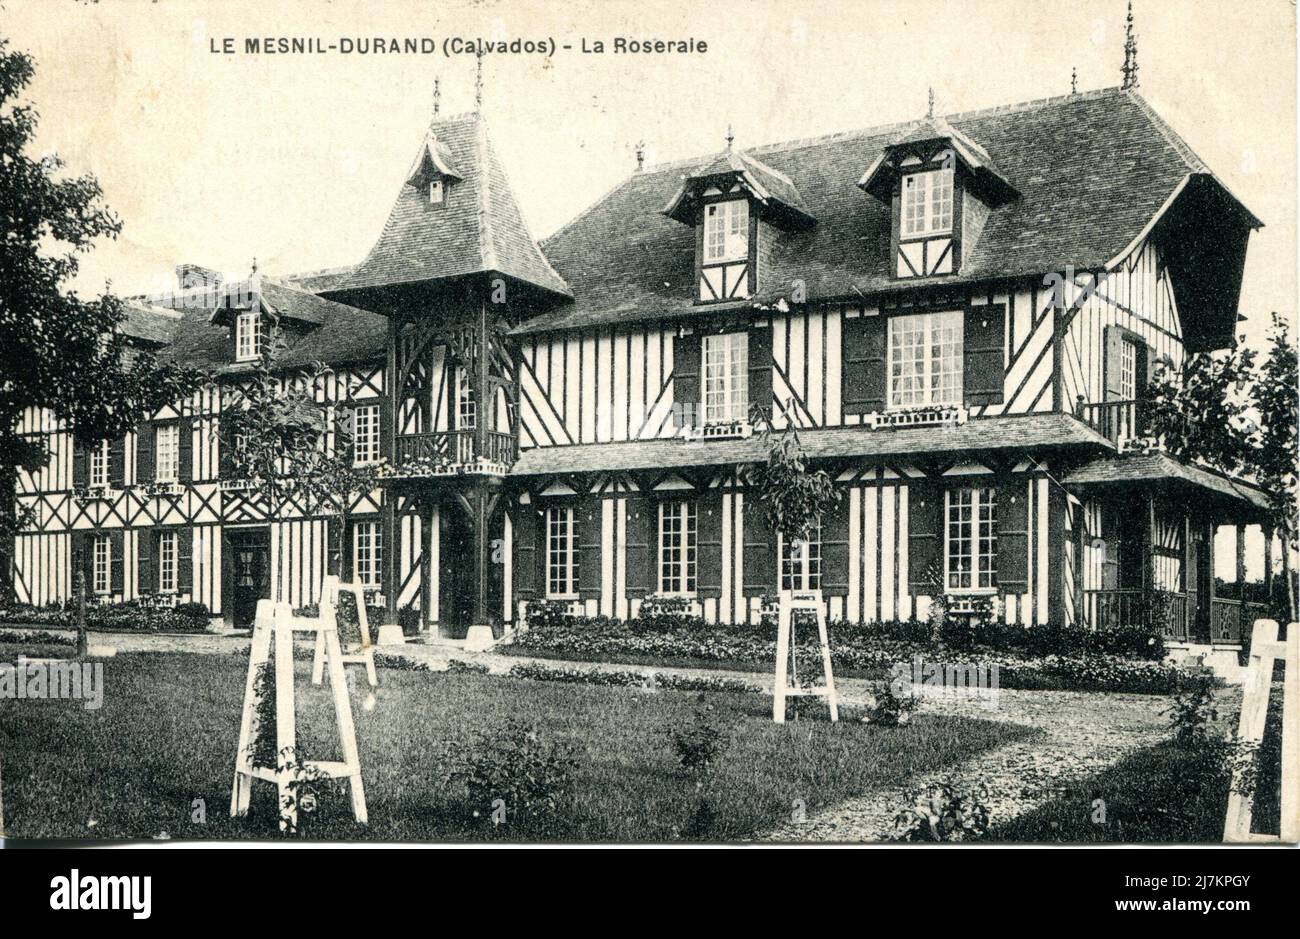 Le Mesnil-Durand, il giardino delle rose Dipartimento: 14 - Calvados Regione: Normandia (ex bassa Normandia) cartolina d'epoca, fine 19th - inizio 20th secolo Foto Stock